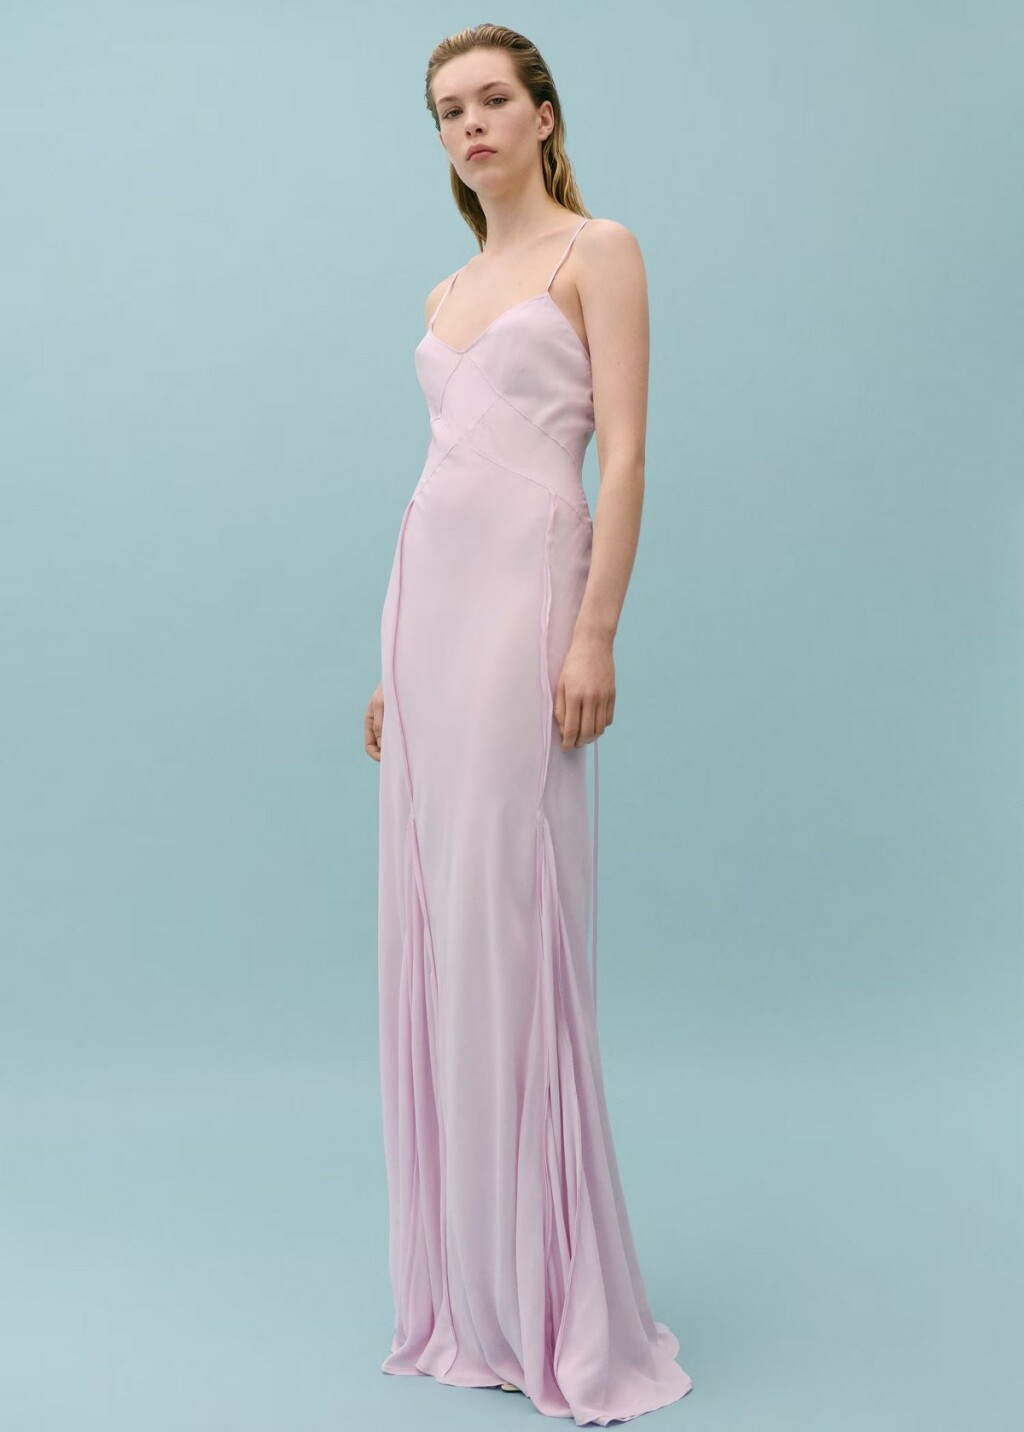 Ružičasta haljina dolazi u veličinama od XS do L